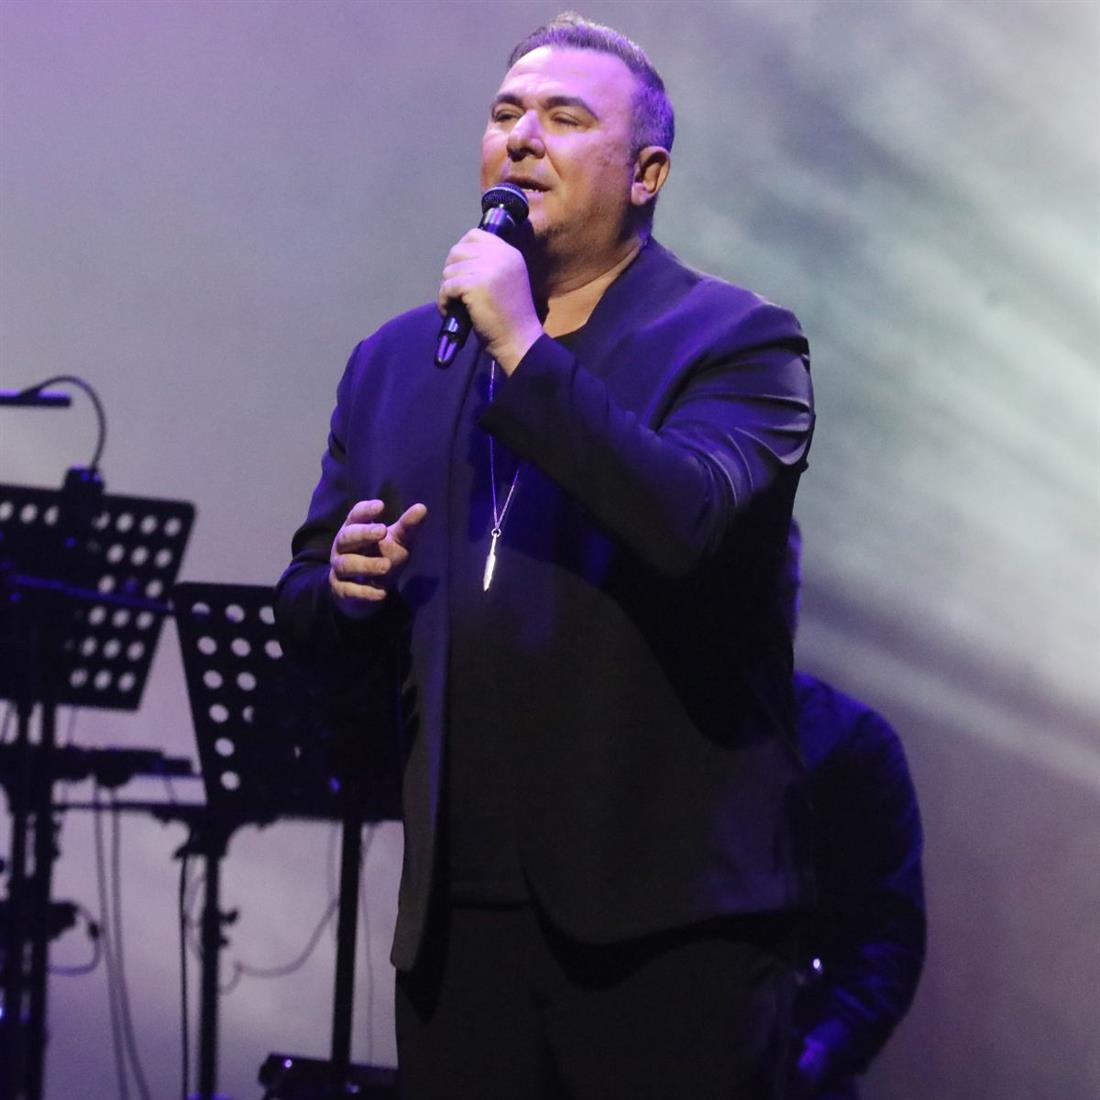 Αντώνης Ρέμος: Τι αναφέρει το πόρισμα της Αρχής για το Ξέπλυμα Μαύρου Χρήματος για τον τραγουδιστή
